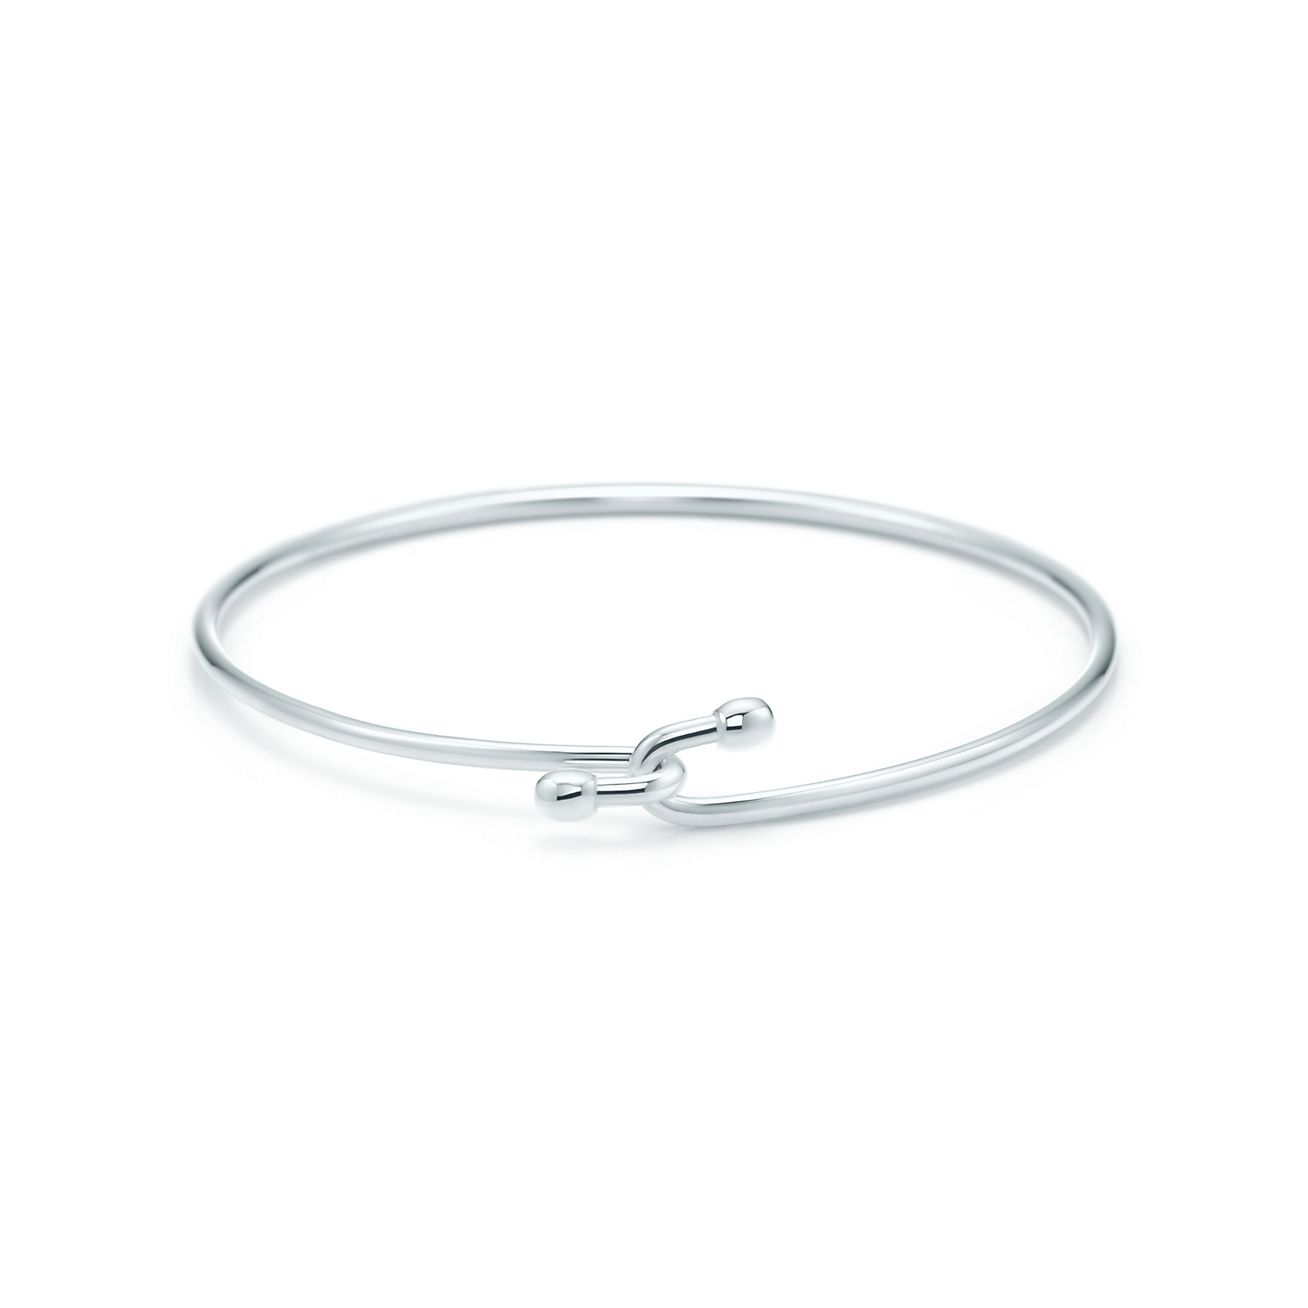 Wire bracelet in sterling silver 